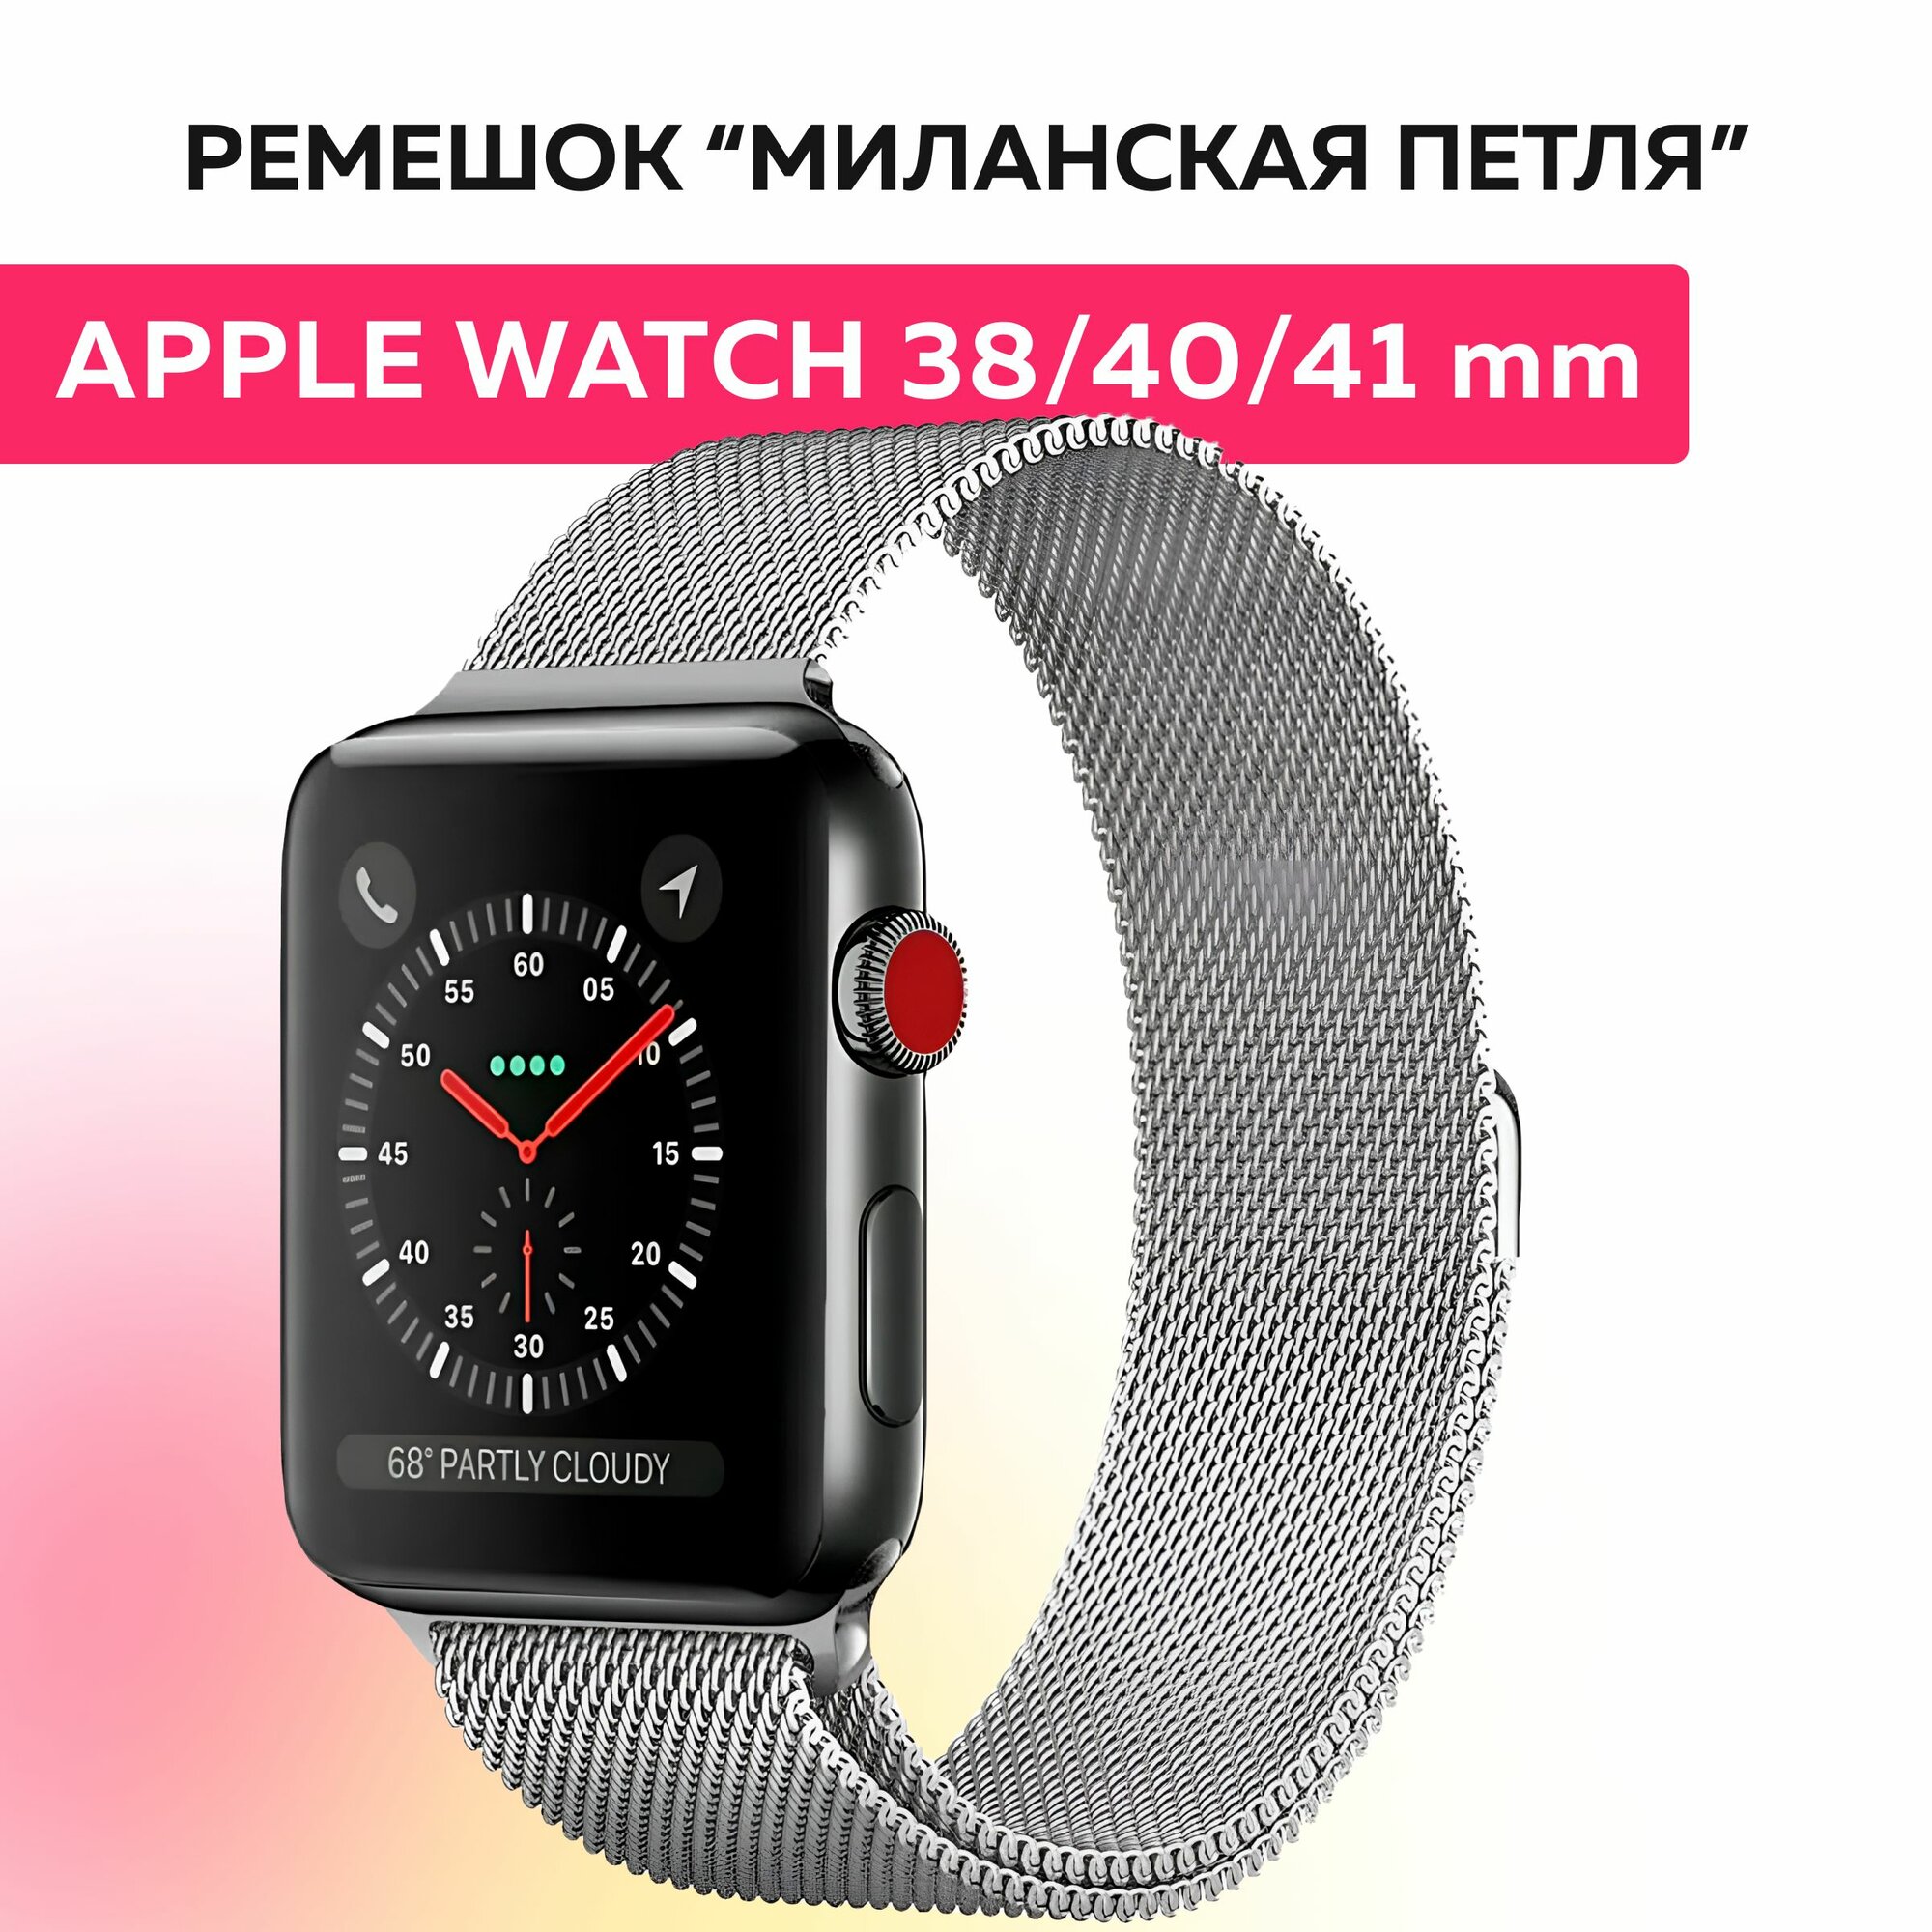 Ремешок "миланская петля" для Apple Watch браслет на умные часы эпл вотч 38, 40, 41 mm